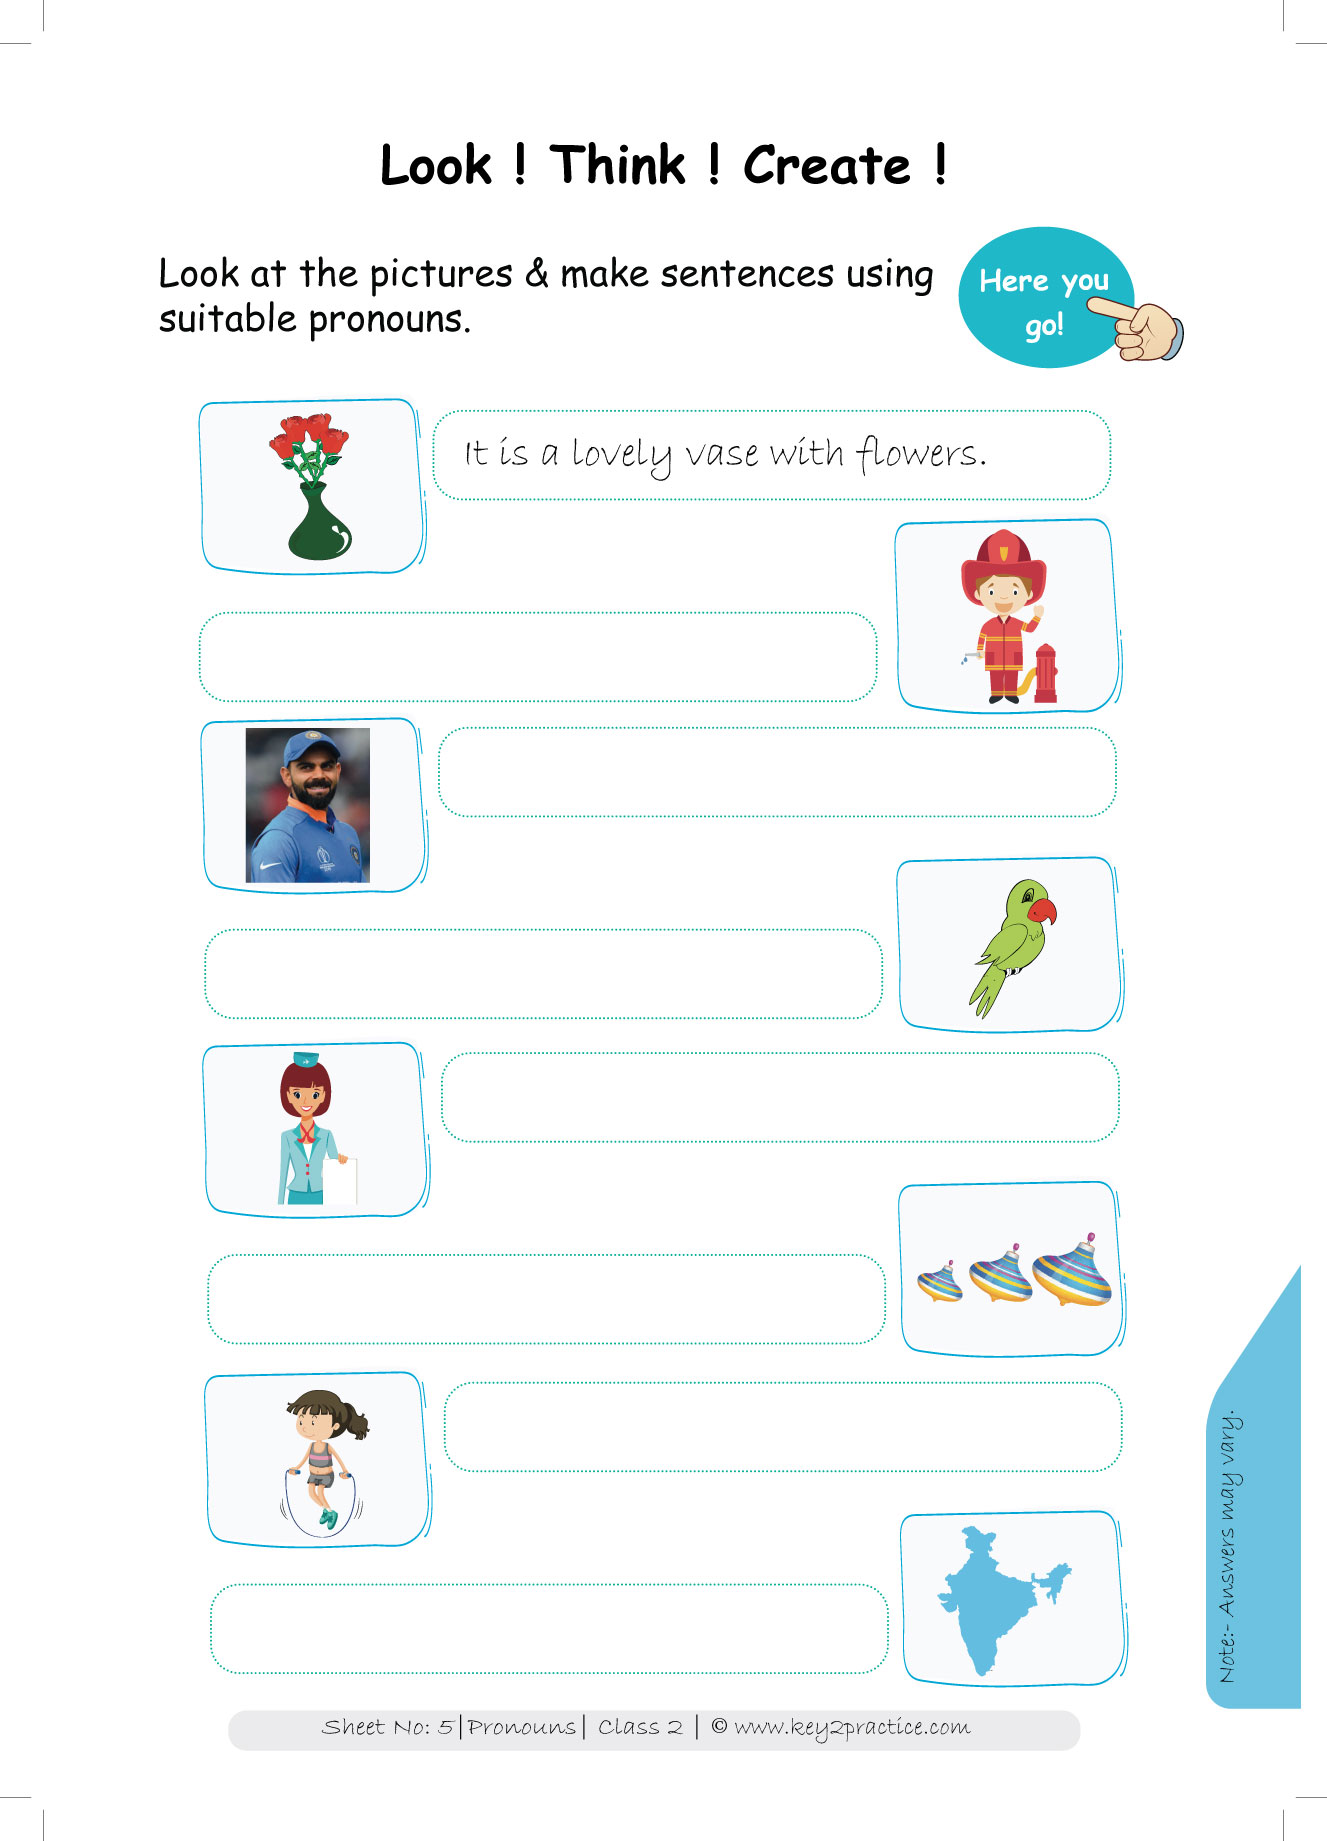 pronouns-worksheets-grade-2-i-english-key2practice-workbooks